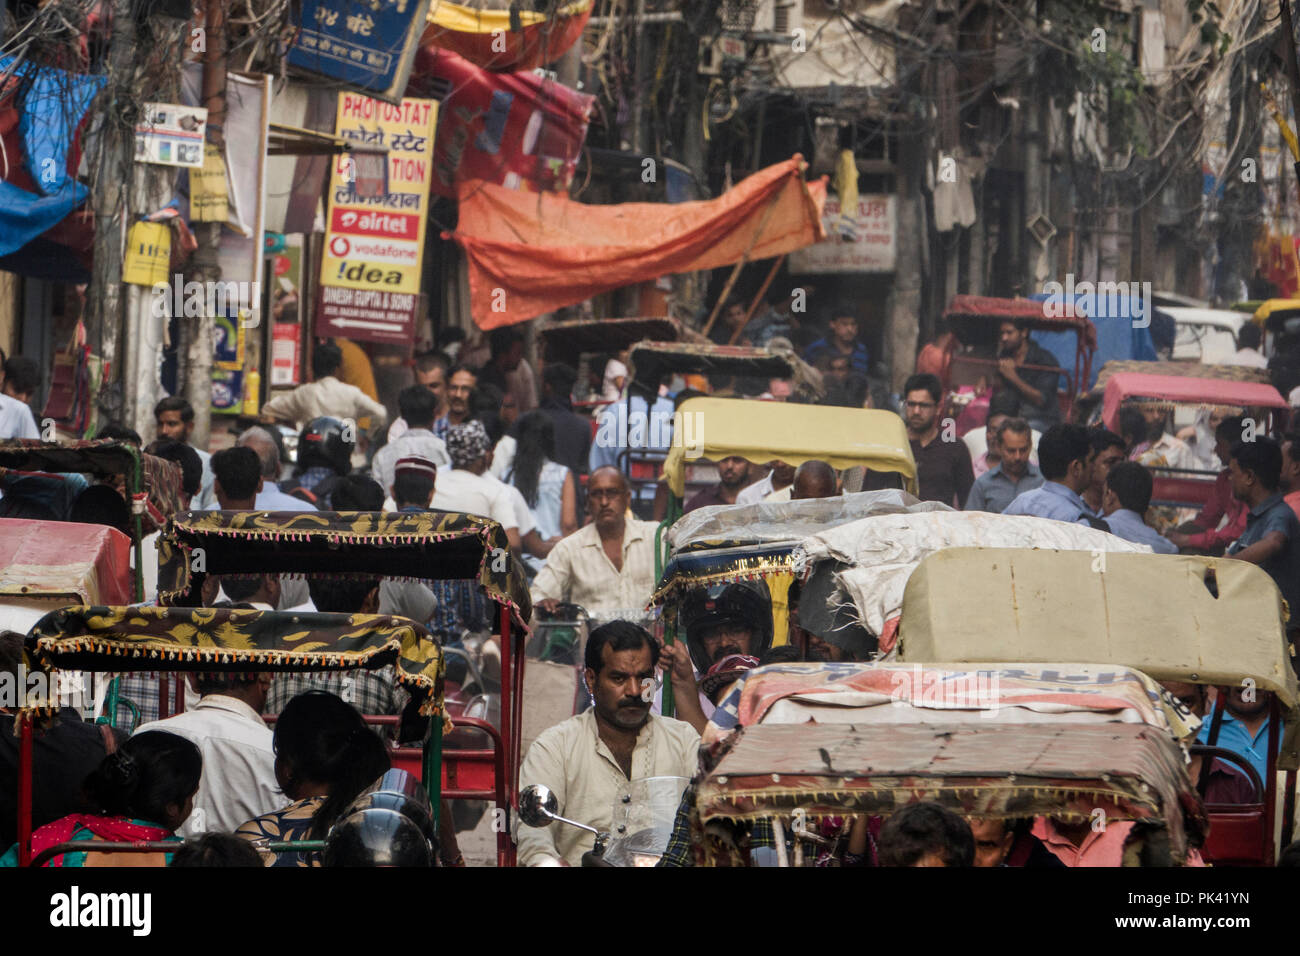 La circulation des piétons et de pousse-pousse dans des scène de rue à Old Delhi, New Delhi, Delhi, Inde Banque D'Images